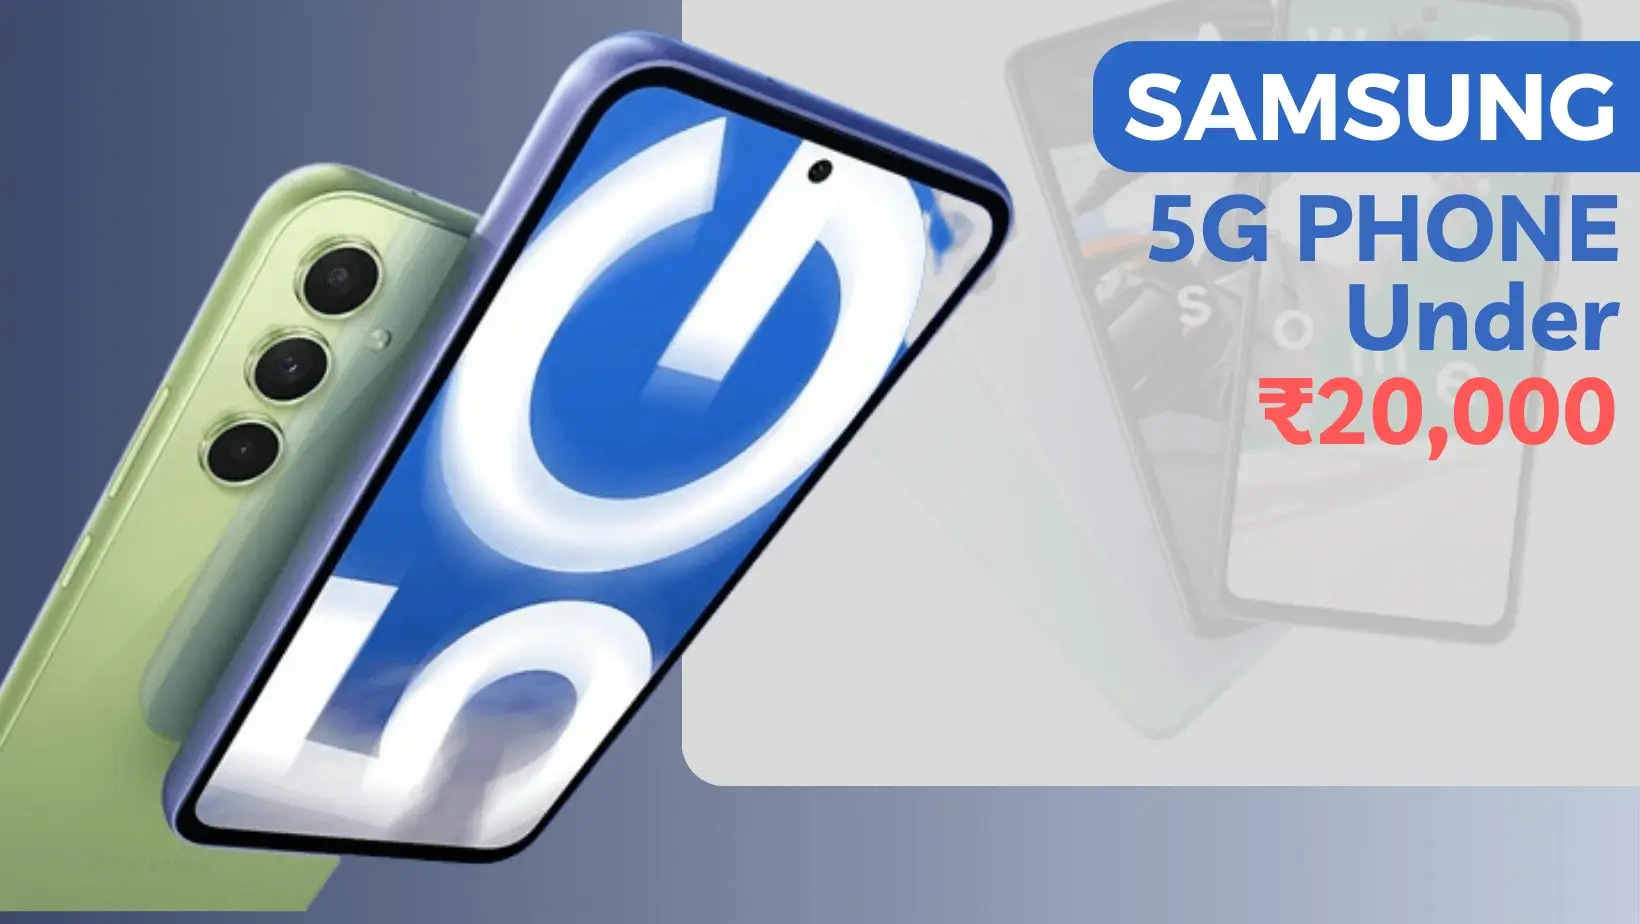 Samsung 5G Smartphone Under 20000